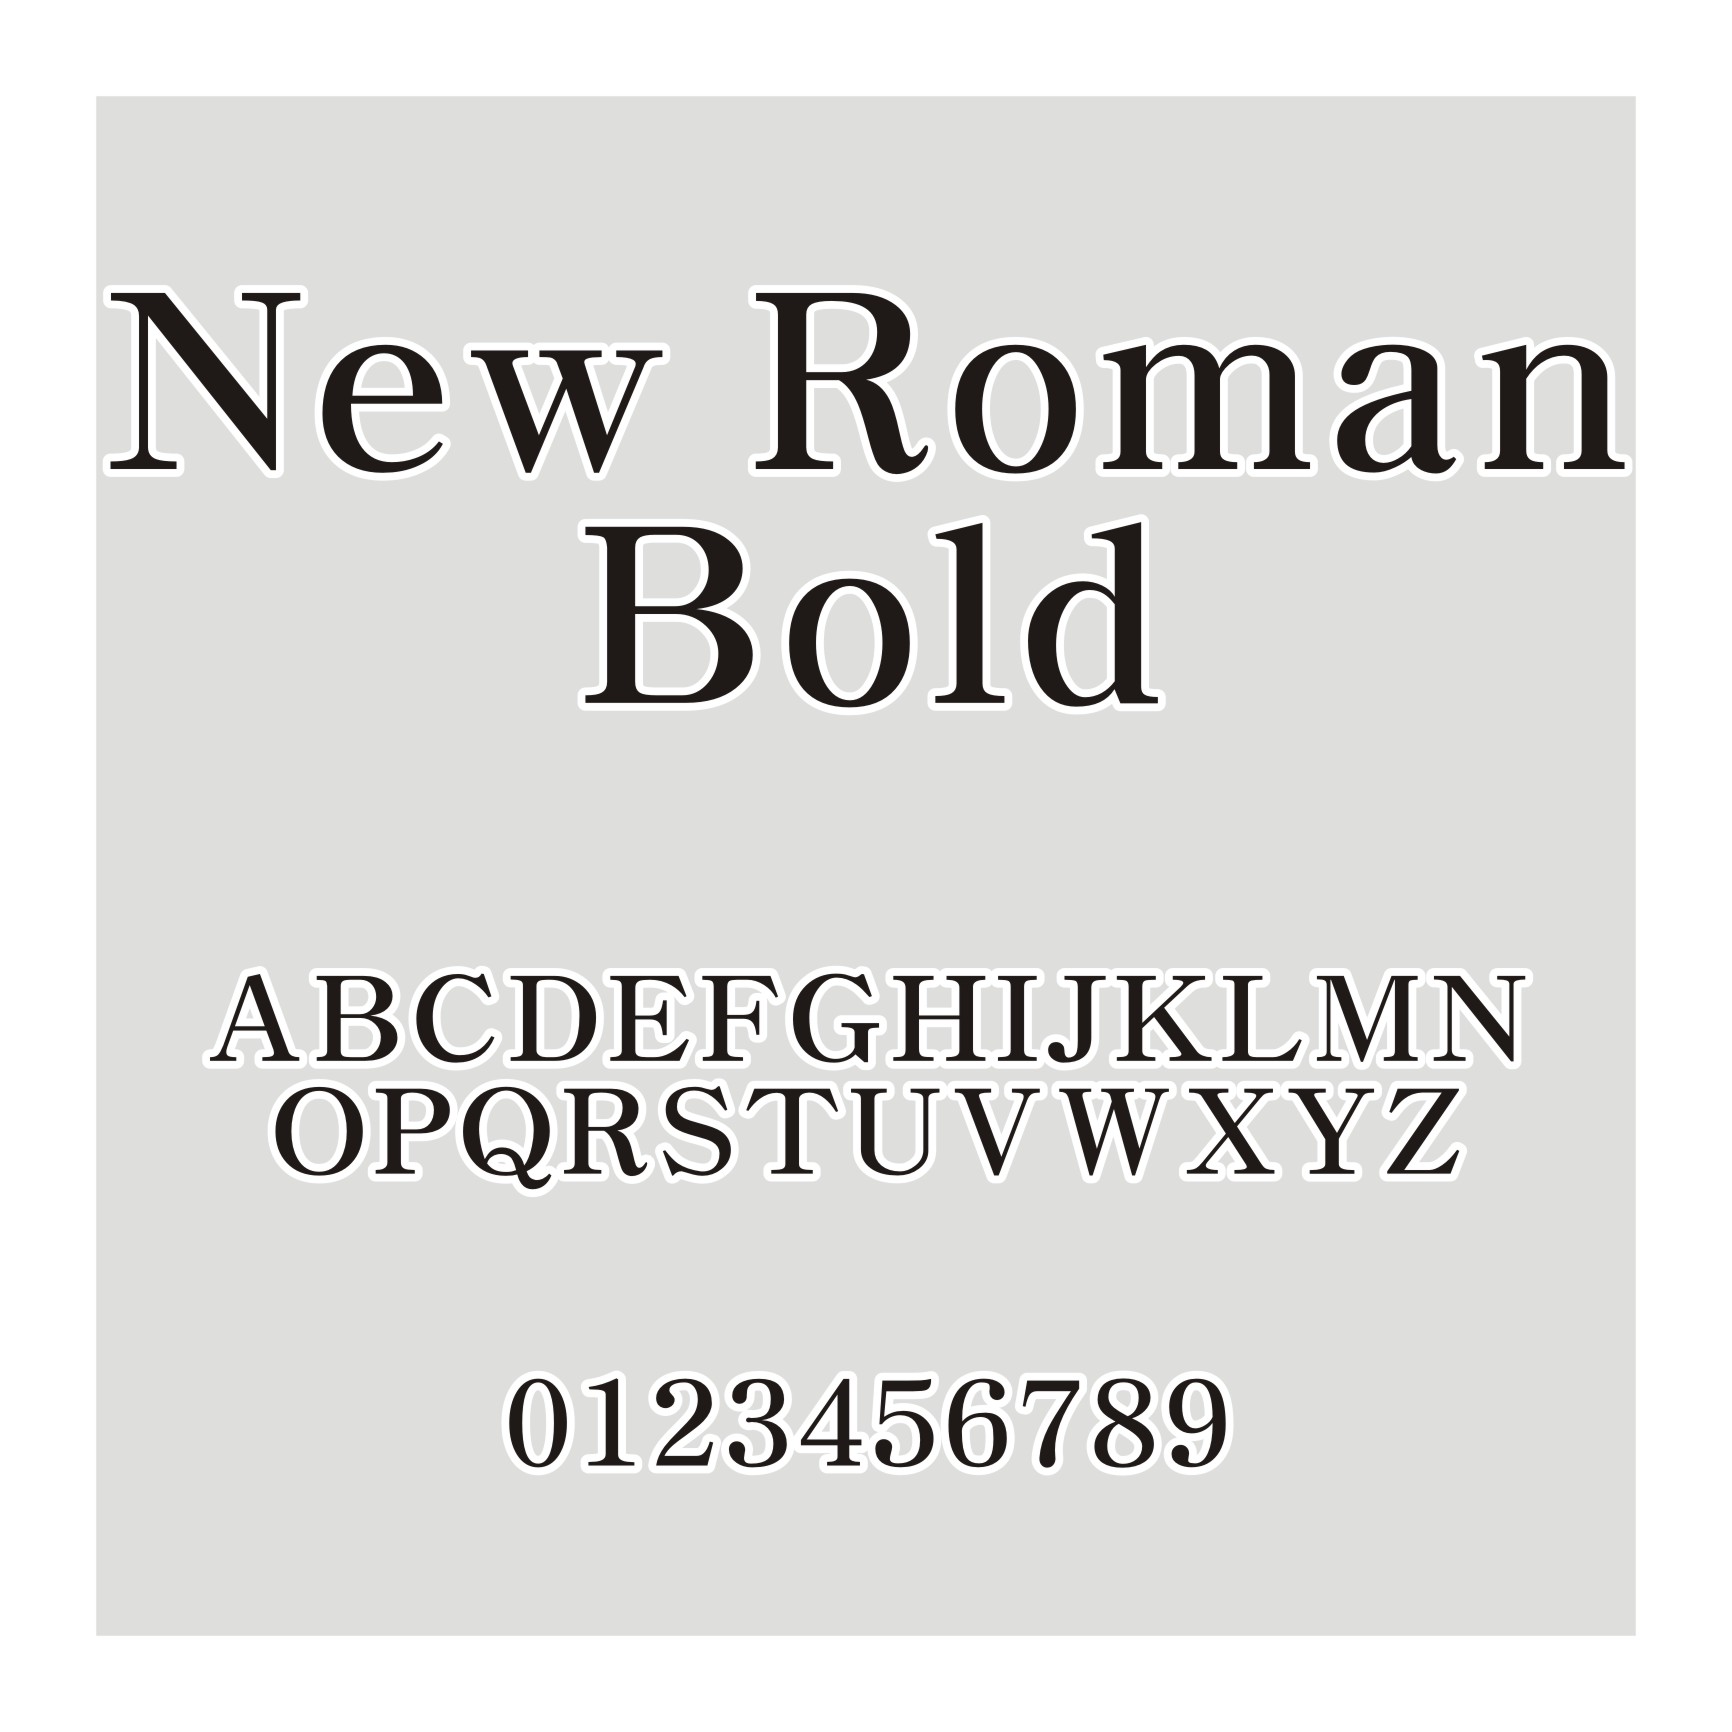 New Roman Bold